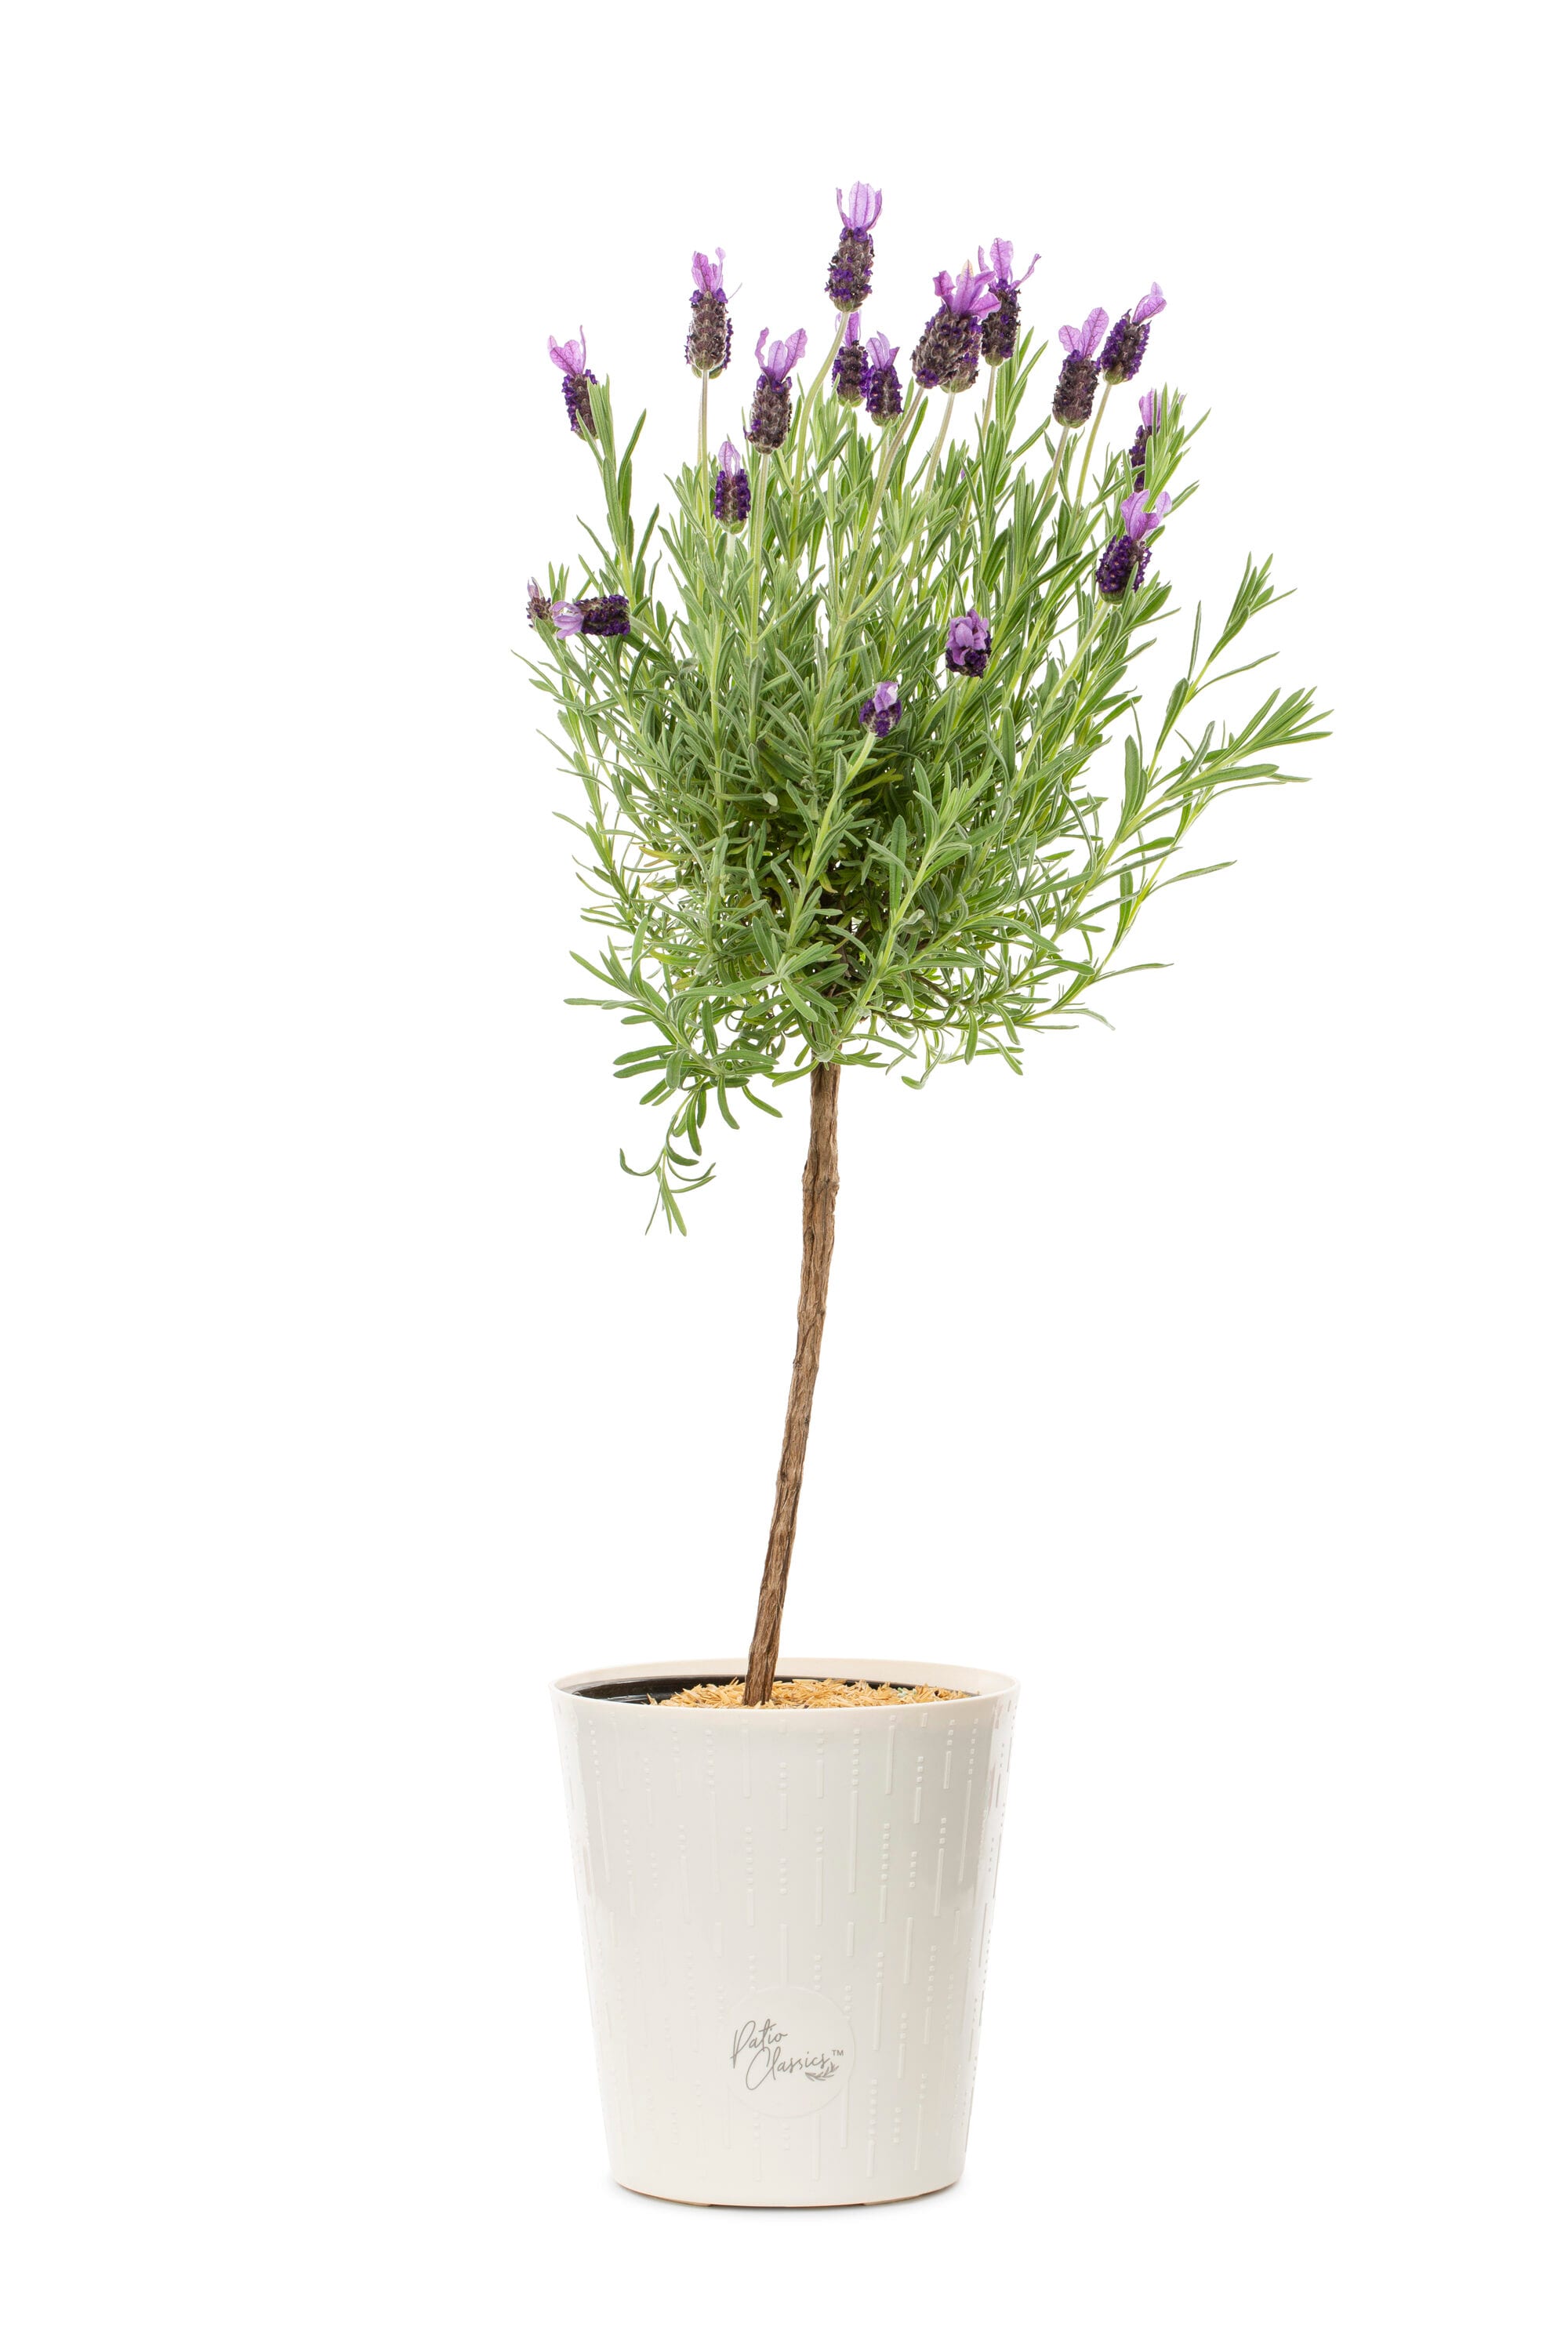 Lavender Live Plants, Spa plants FOR SALE